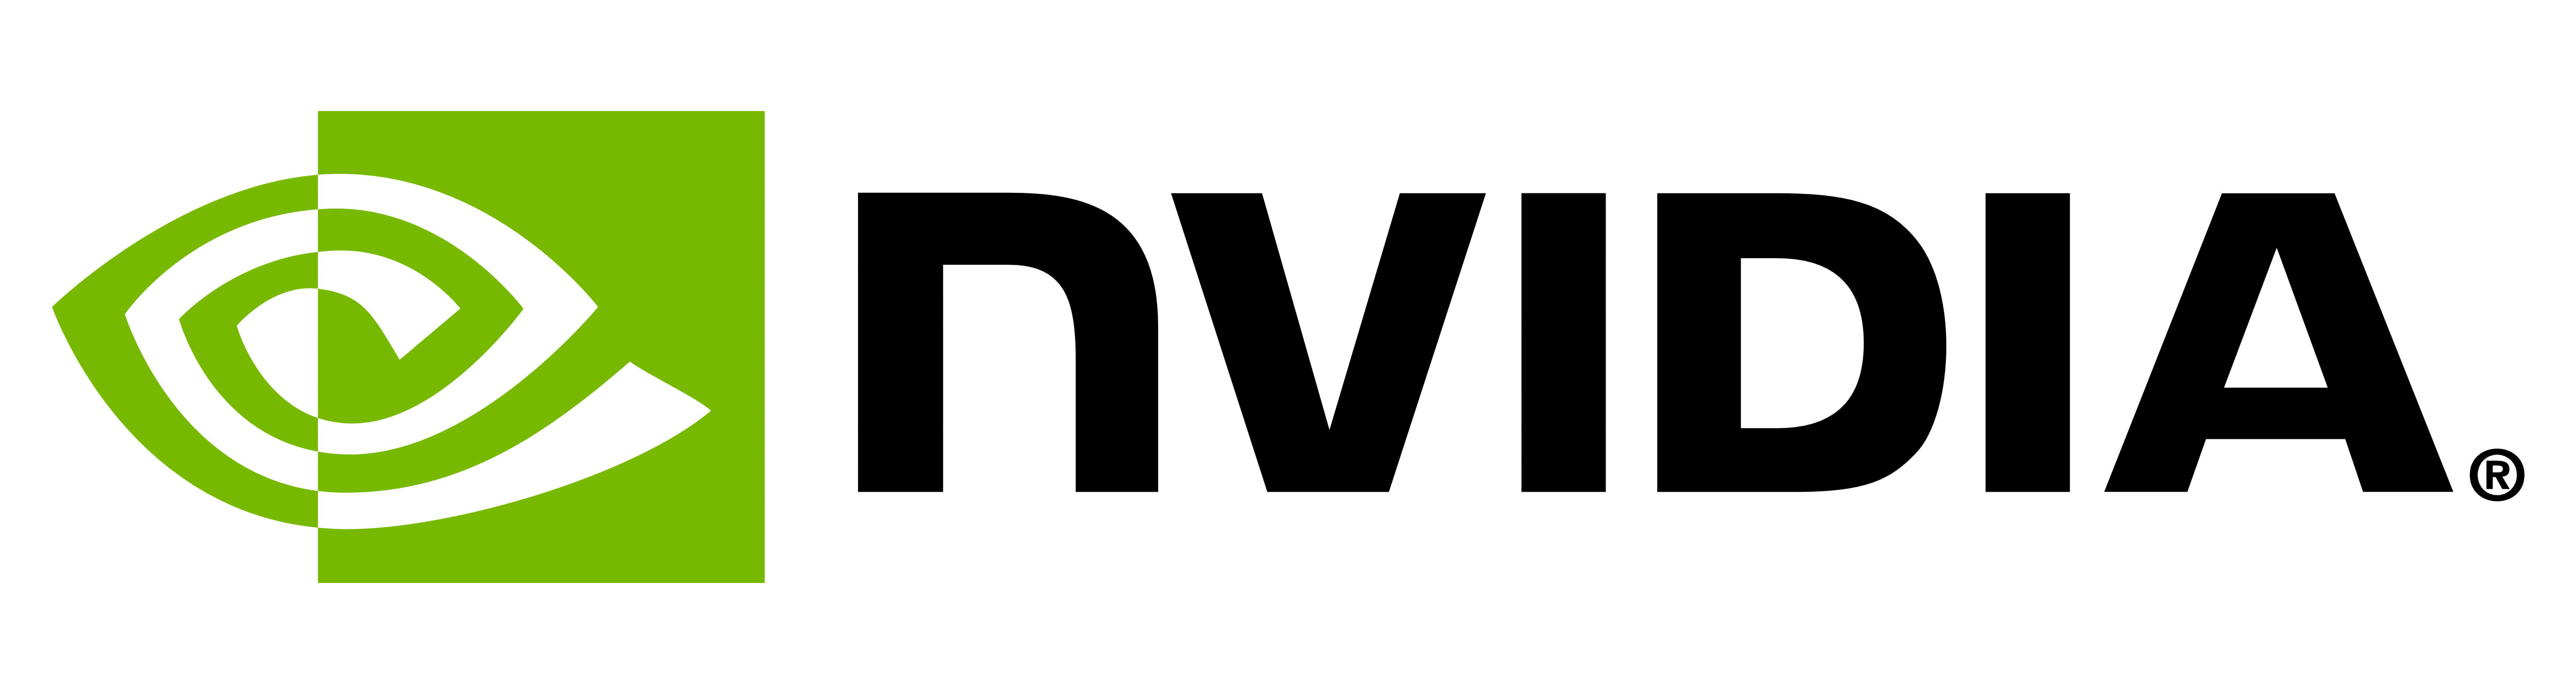 משמעות הלוגו והסמל של NVIDIA | היסטוריה ואבולוציה